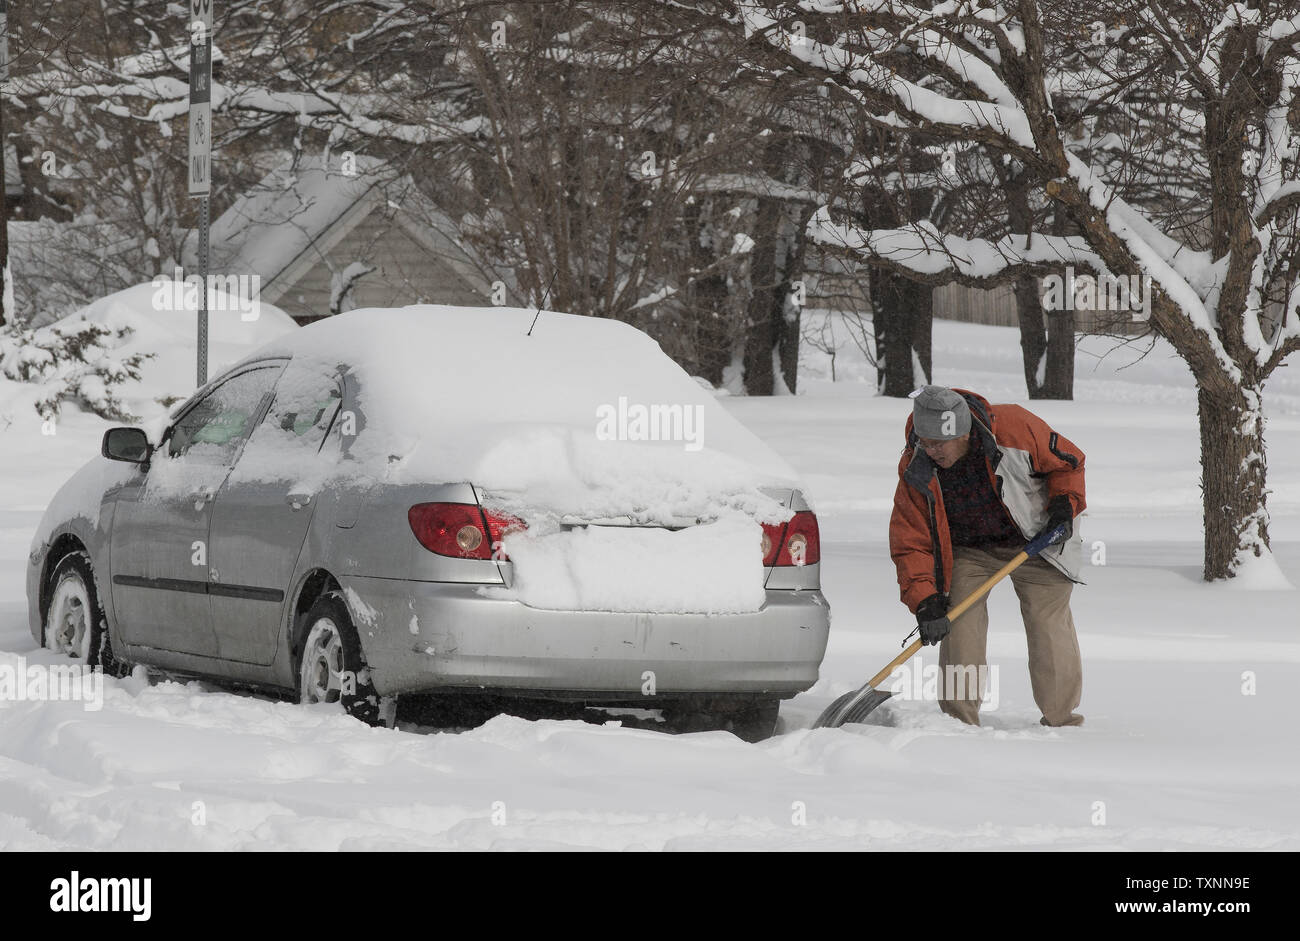 Questo automobilista ha dovuto cancellare la neve da circa la sua auto prima di rimuovere la neve sulla sommità della sua vettura durante una tempesta di neve che ha lasciato su un piede di neve a Denver il 2 febbraio 2016. Foto di Gary C. Caskey/UPI Foto Stock